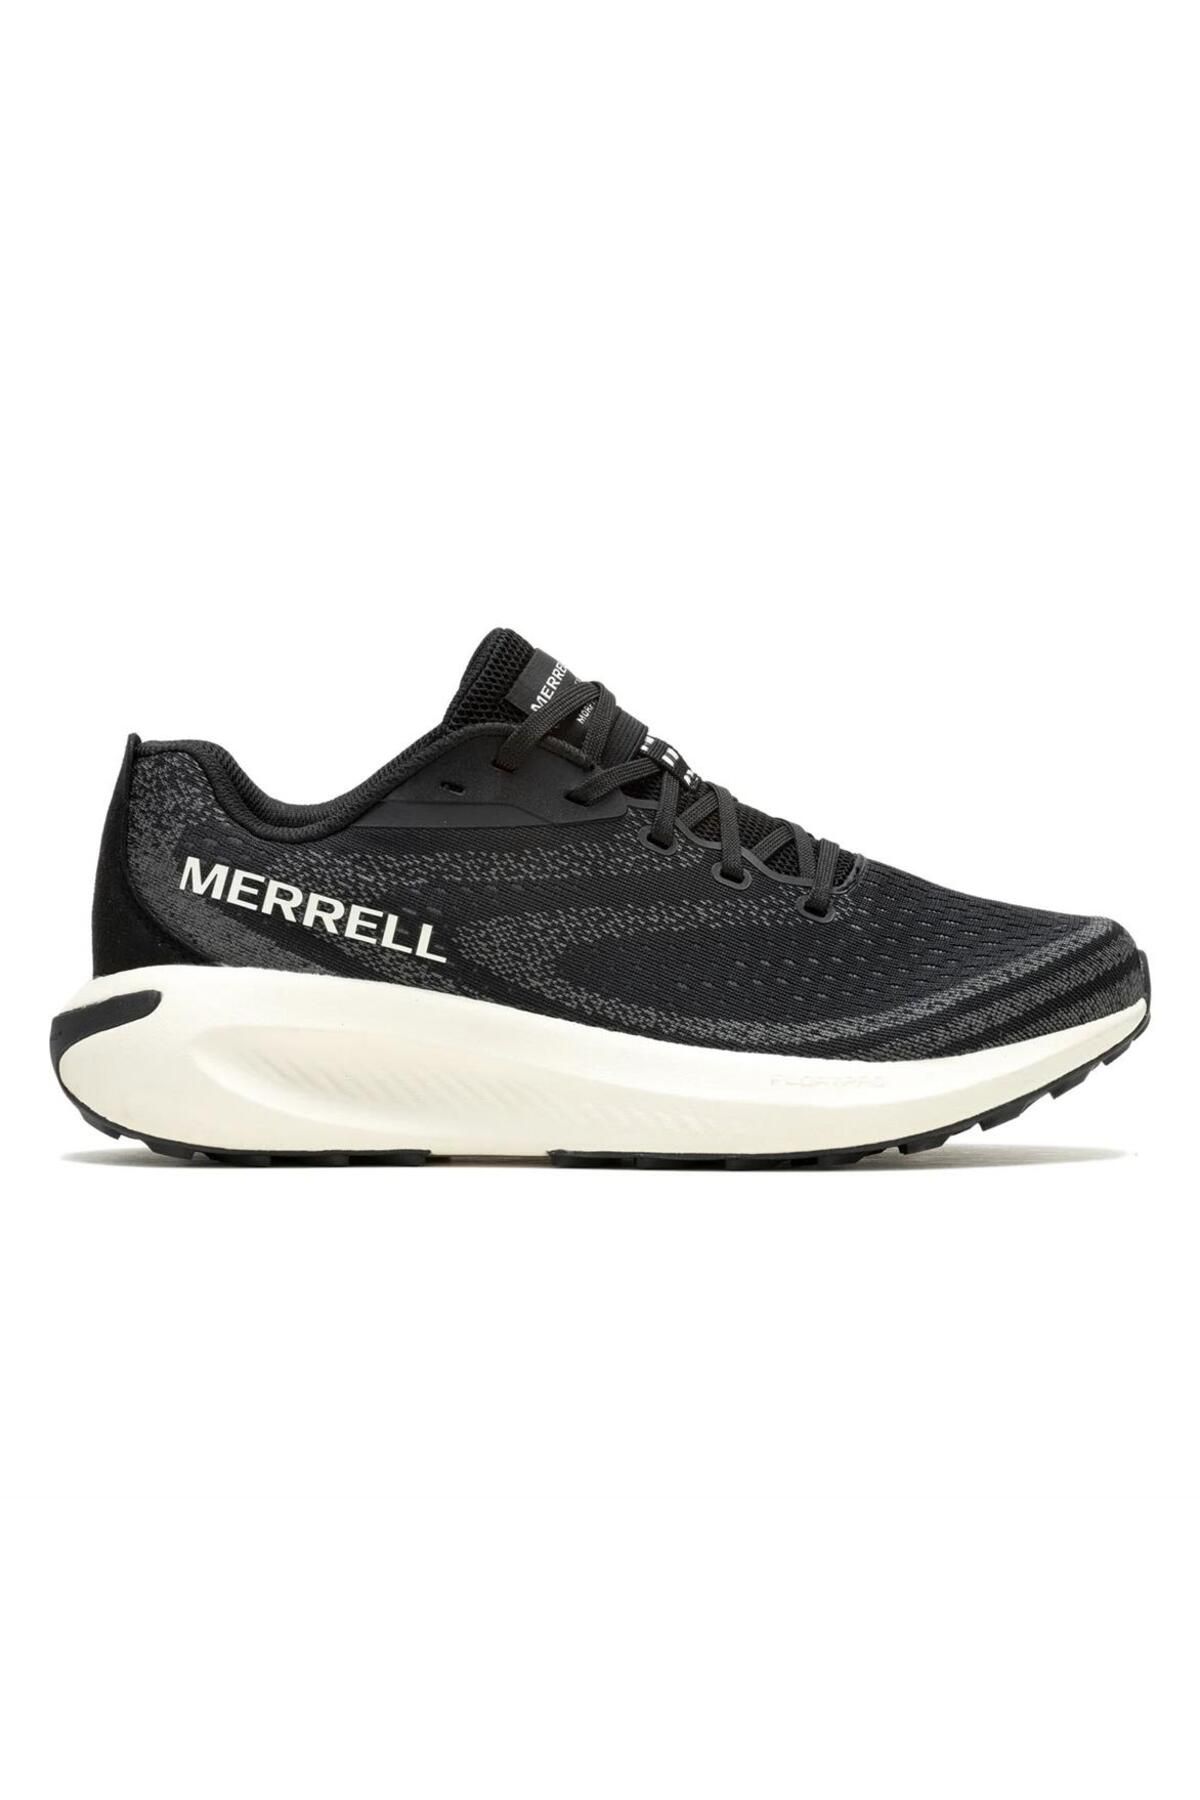 Merrell Morphlite Kadın Siyah Patika Koşusu Ayakkabısı